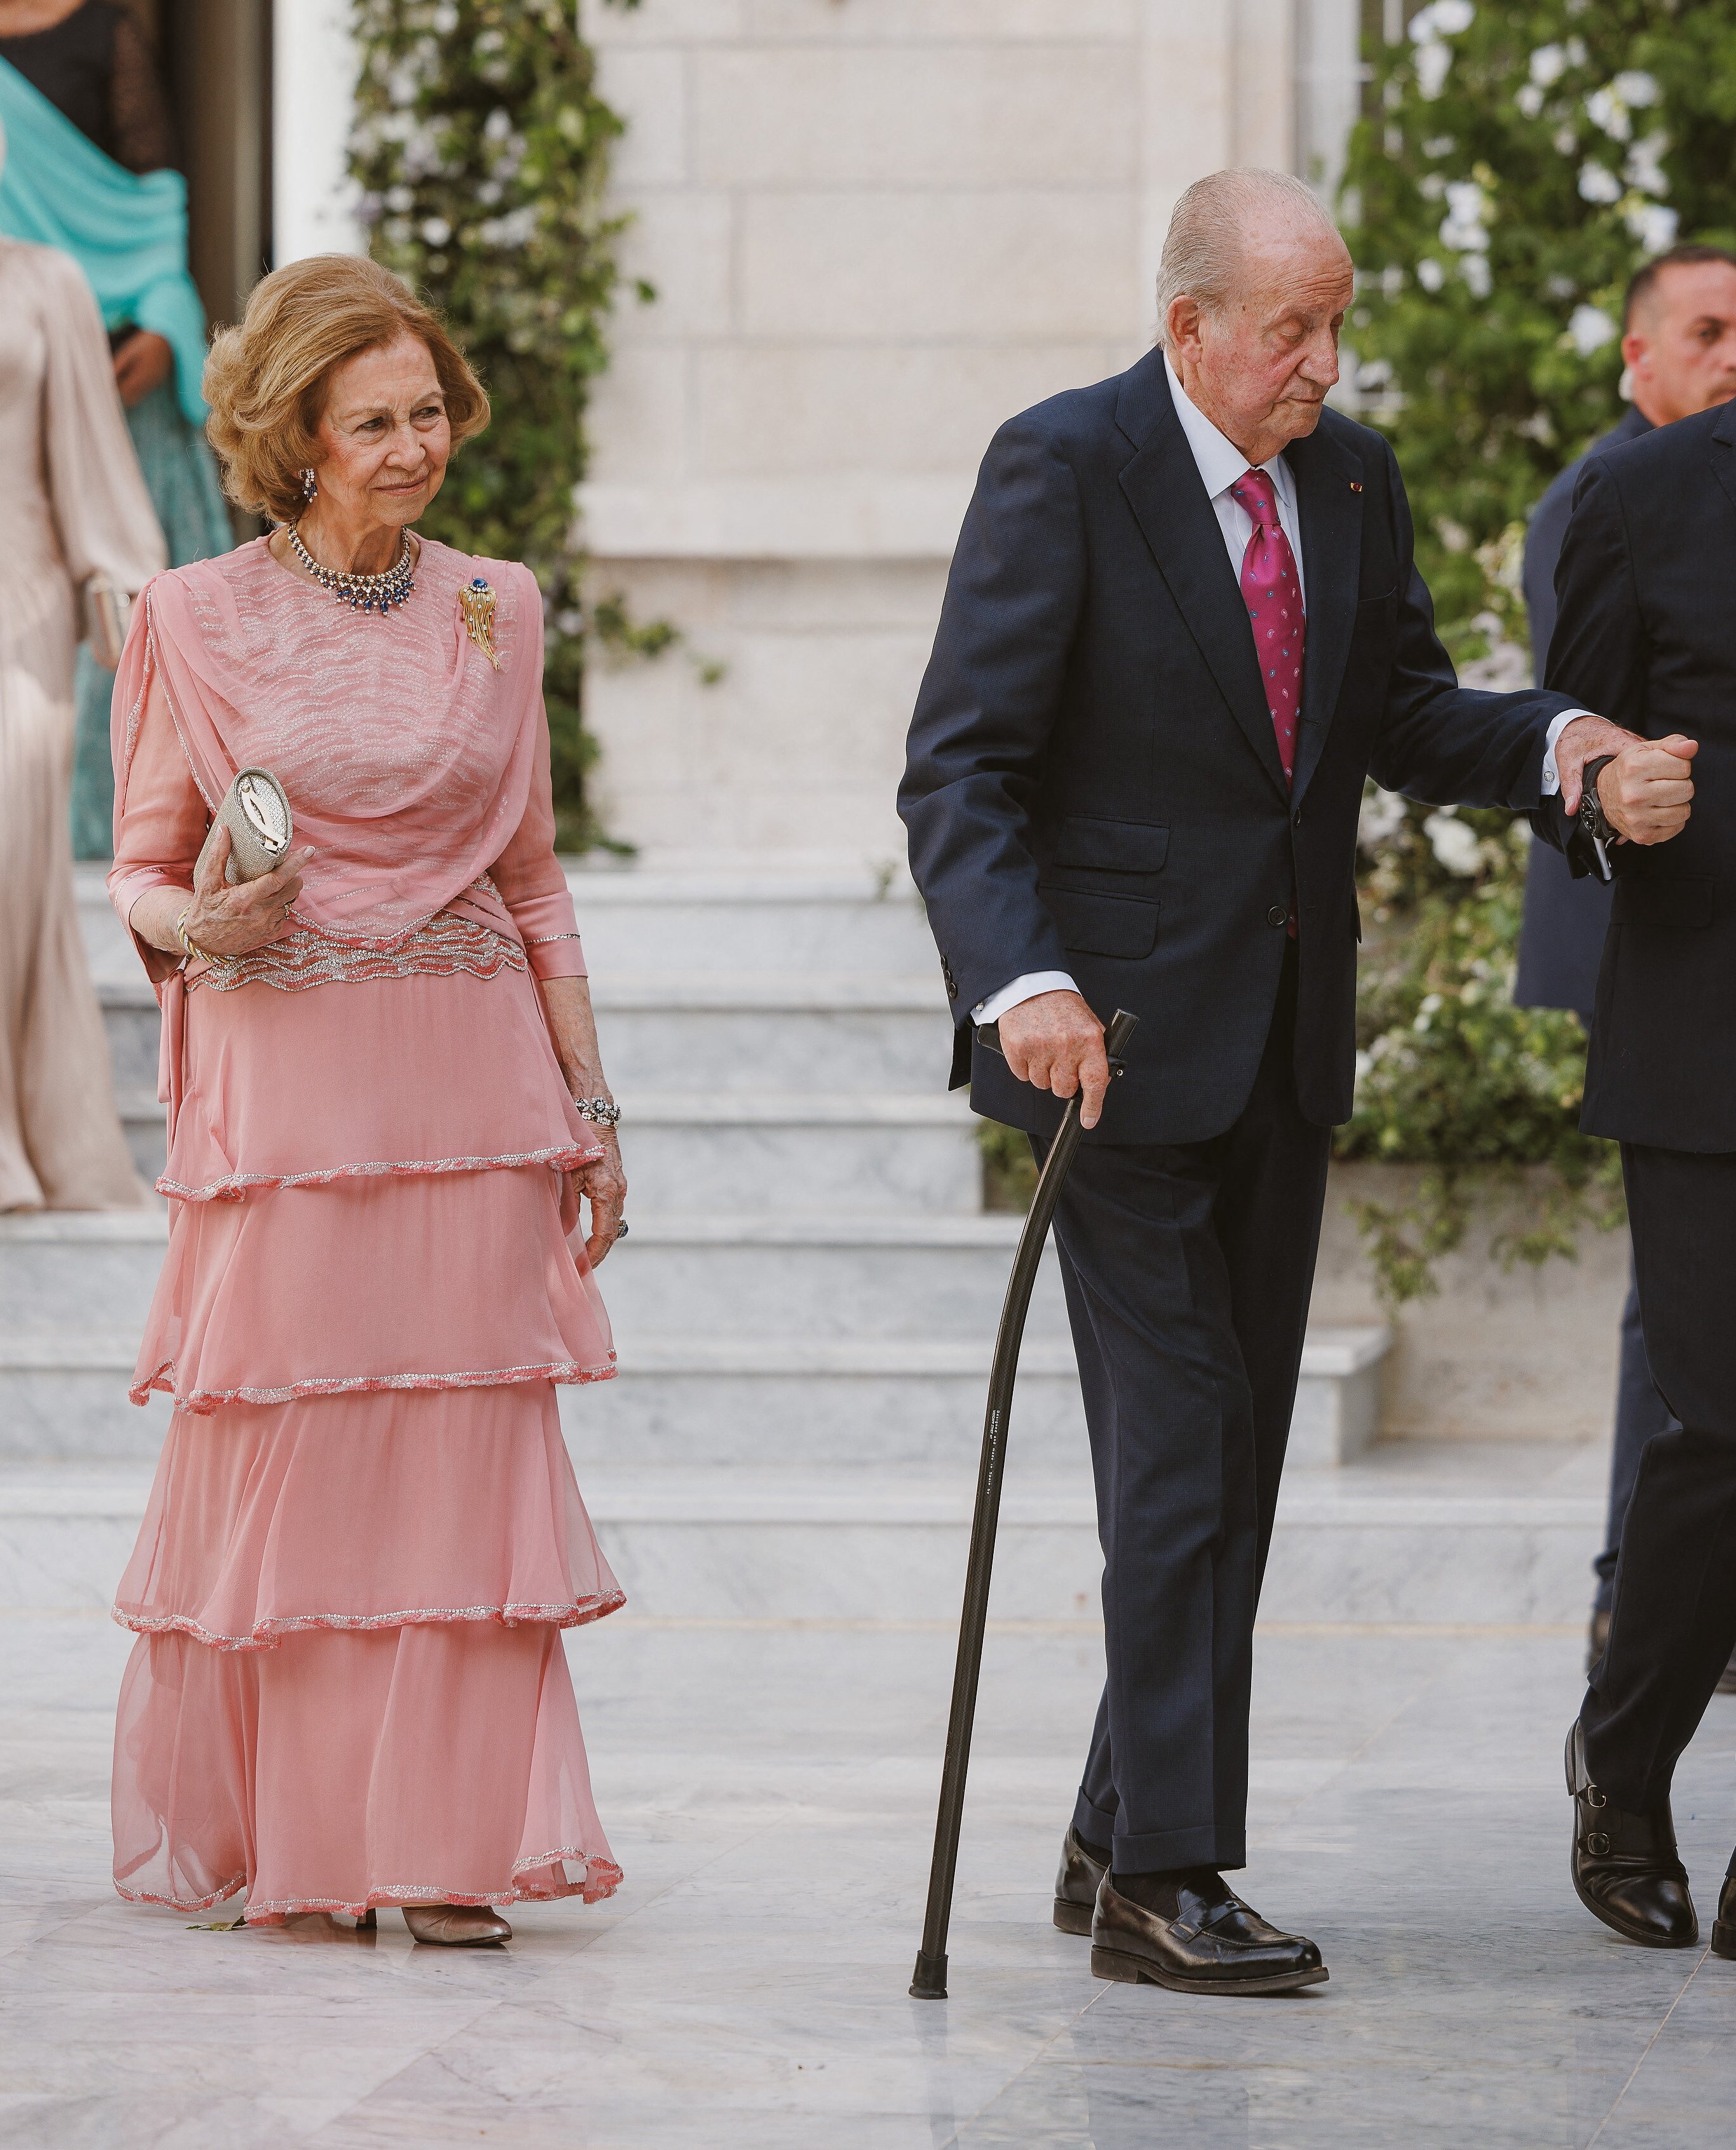 Juan Carlos decrépito y en silla de ruedas en Jordania. La foto que quería esconder